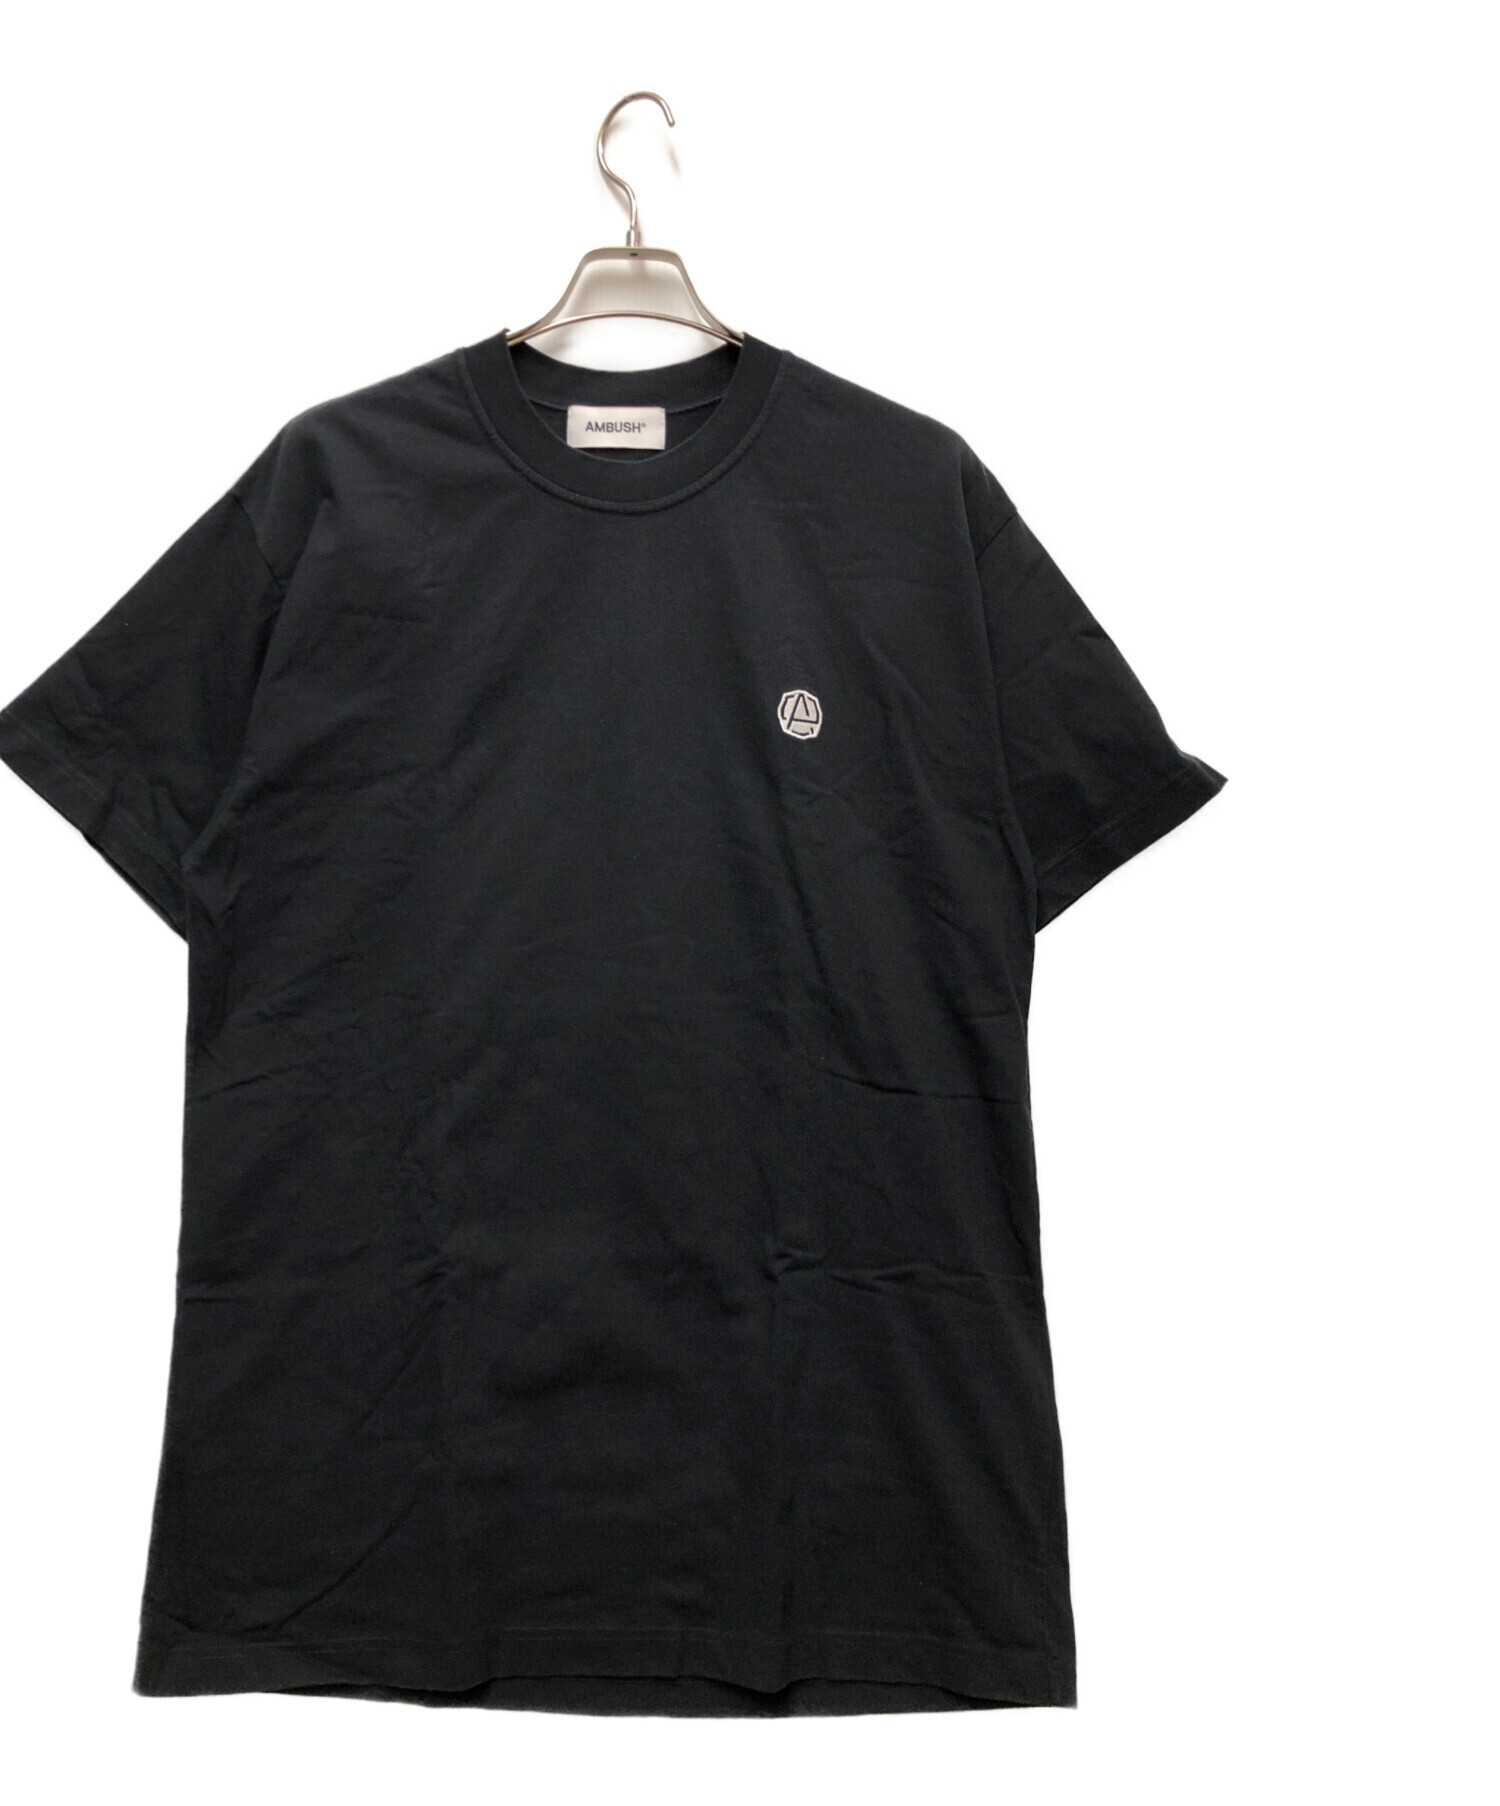 AMBUSH (アンブッシュ) Tシャツ ブラック サイズ:XL